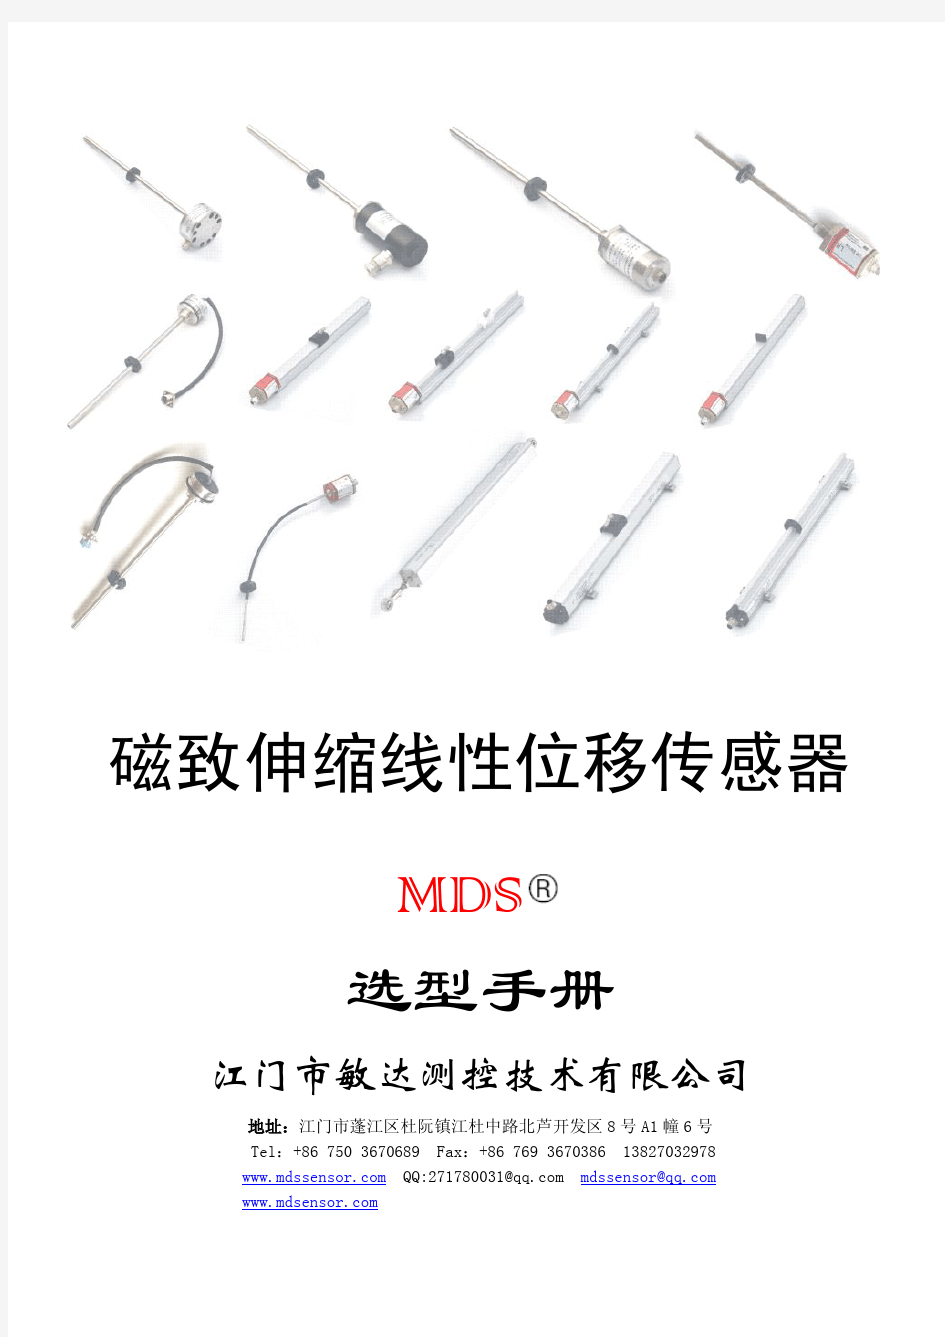 MDS-L磁致伸缩位移传感器选型手册 (1)